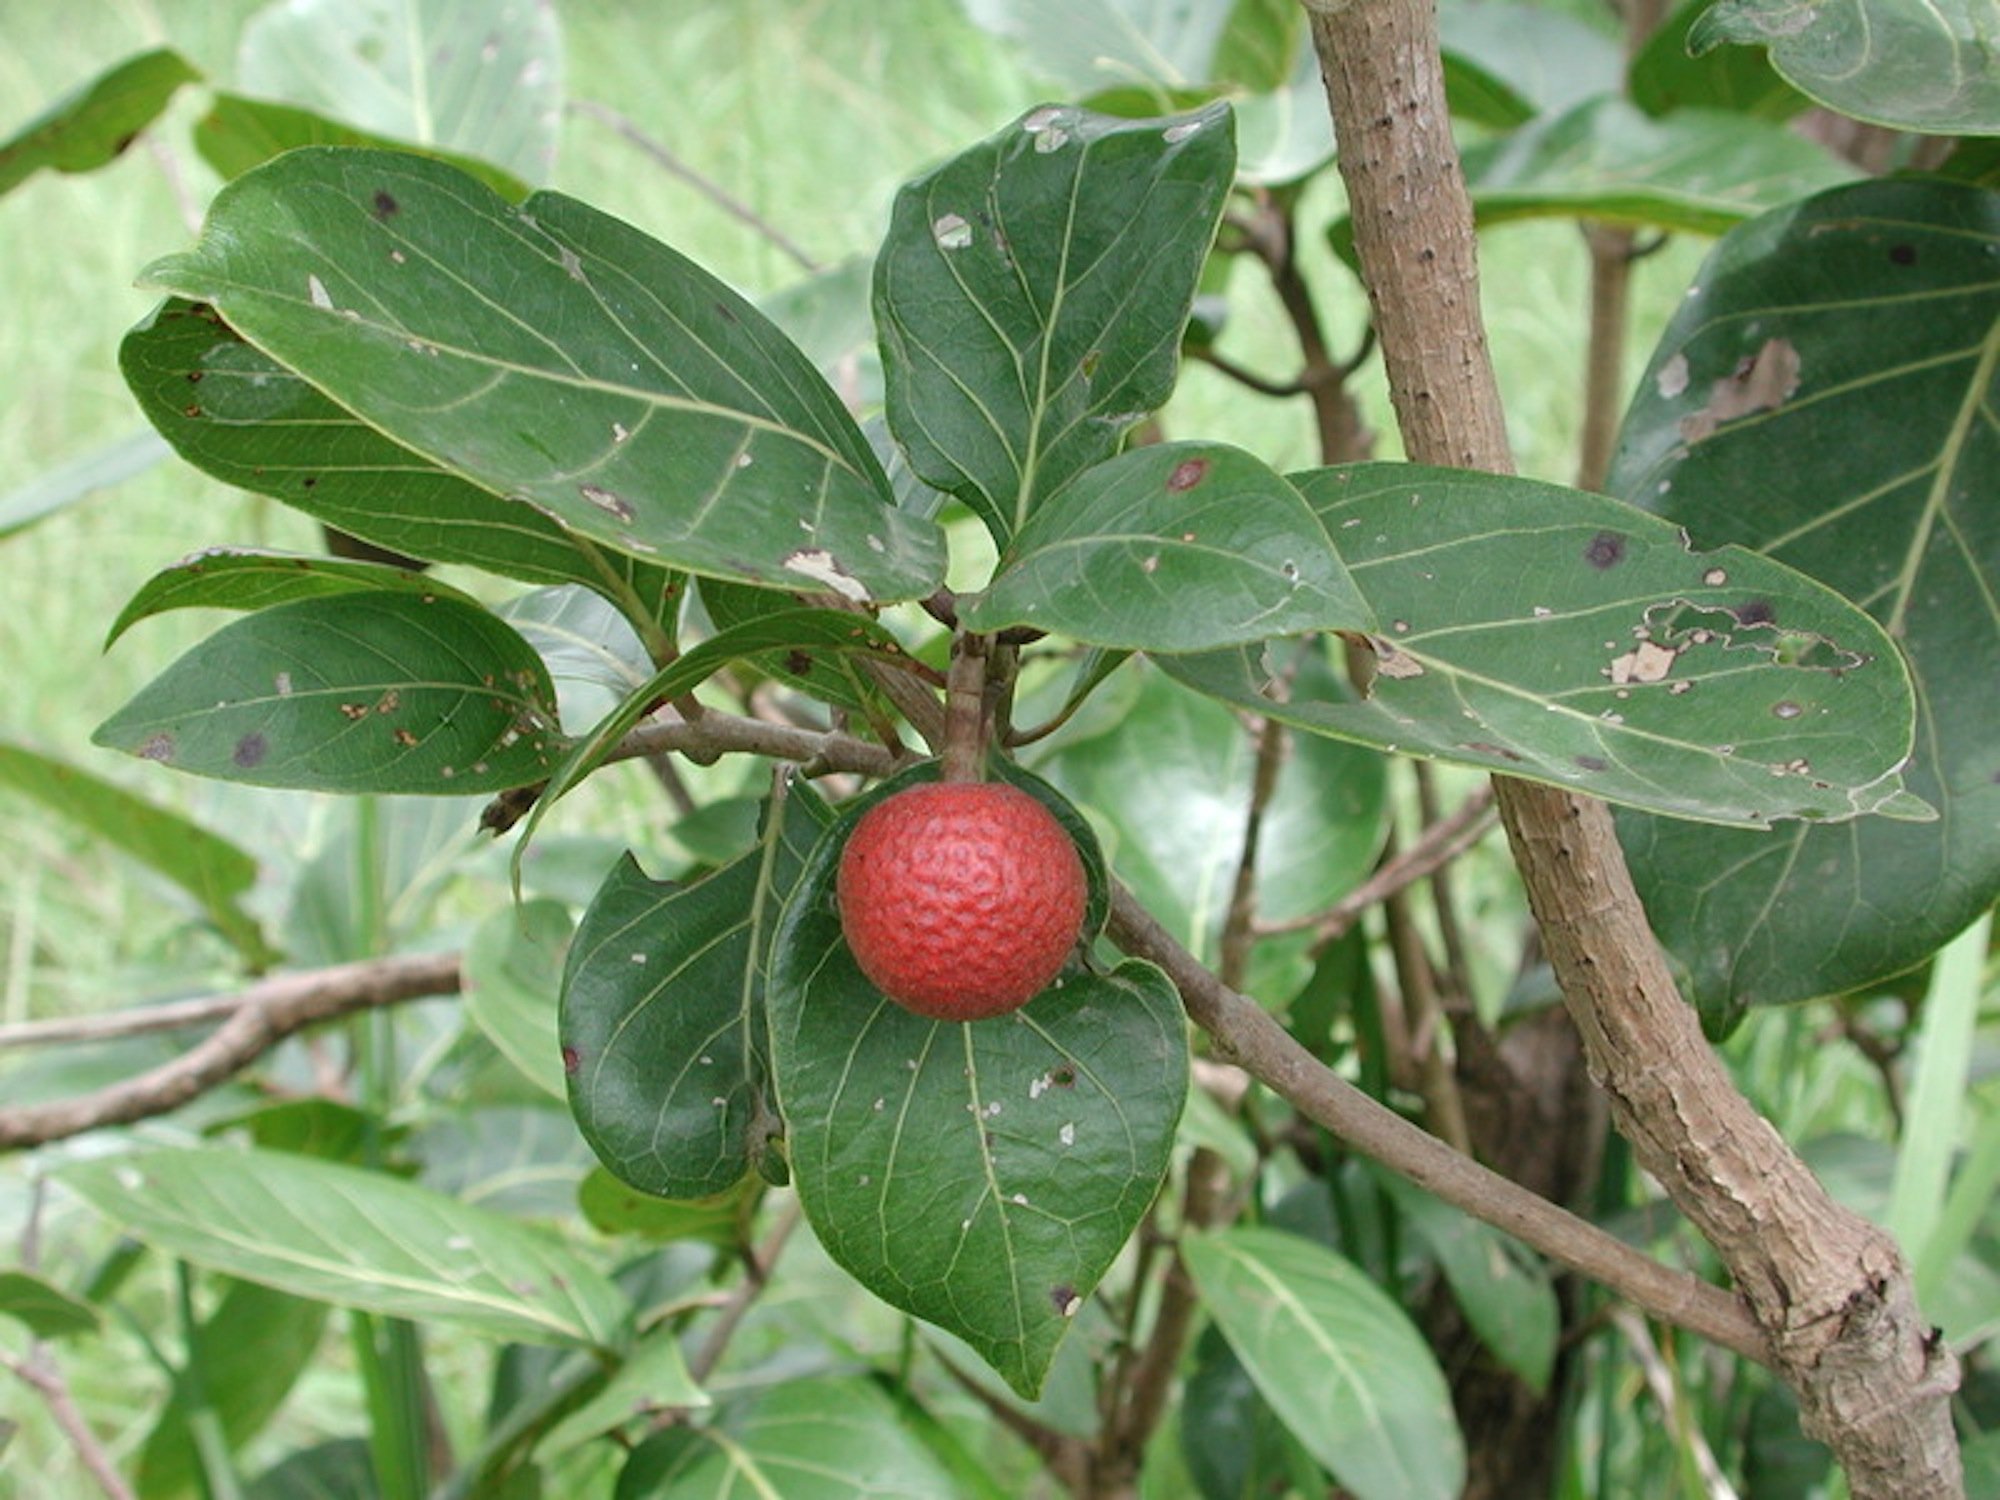 Nauclea latifolia: Die Heilpflanze ist unter anderem in Burkina Faso beheimatet und enthält genau den gleichen Wirkstoff, den Grünenthal in den 1970-er Jahren synthetisch entwickelt hat. Die Pflanze wird von den Einheimischen traditionell zur Schmerzlinderung und gegen die Symptome von Malaria genutzt.